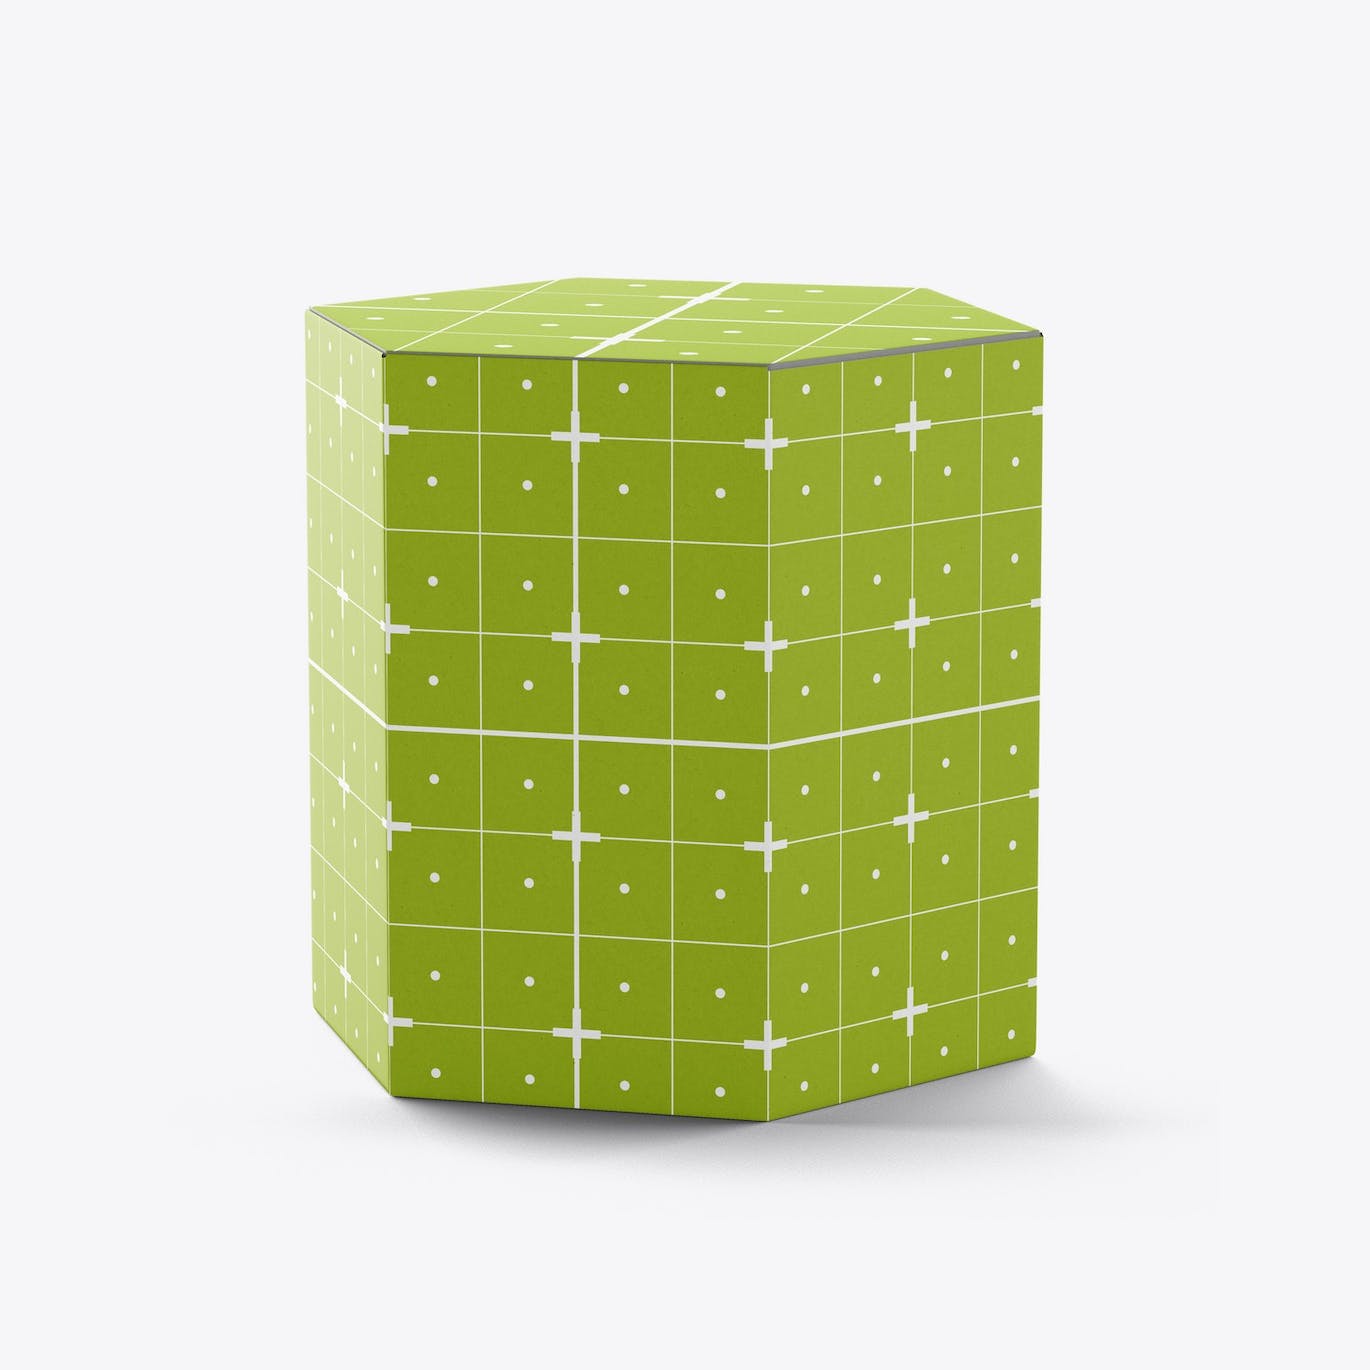 六边形长方体纸盒包装设计样机 Hexagonal Box Mockup 样机素材 第14张